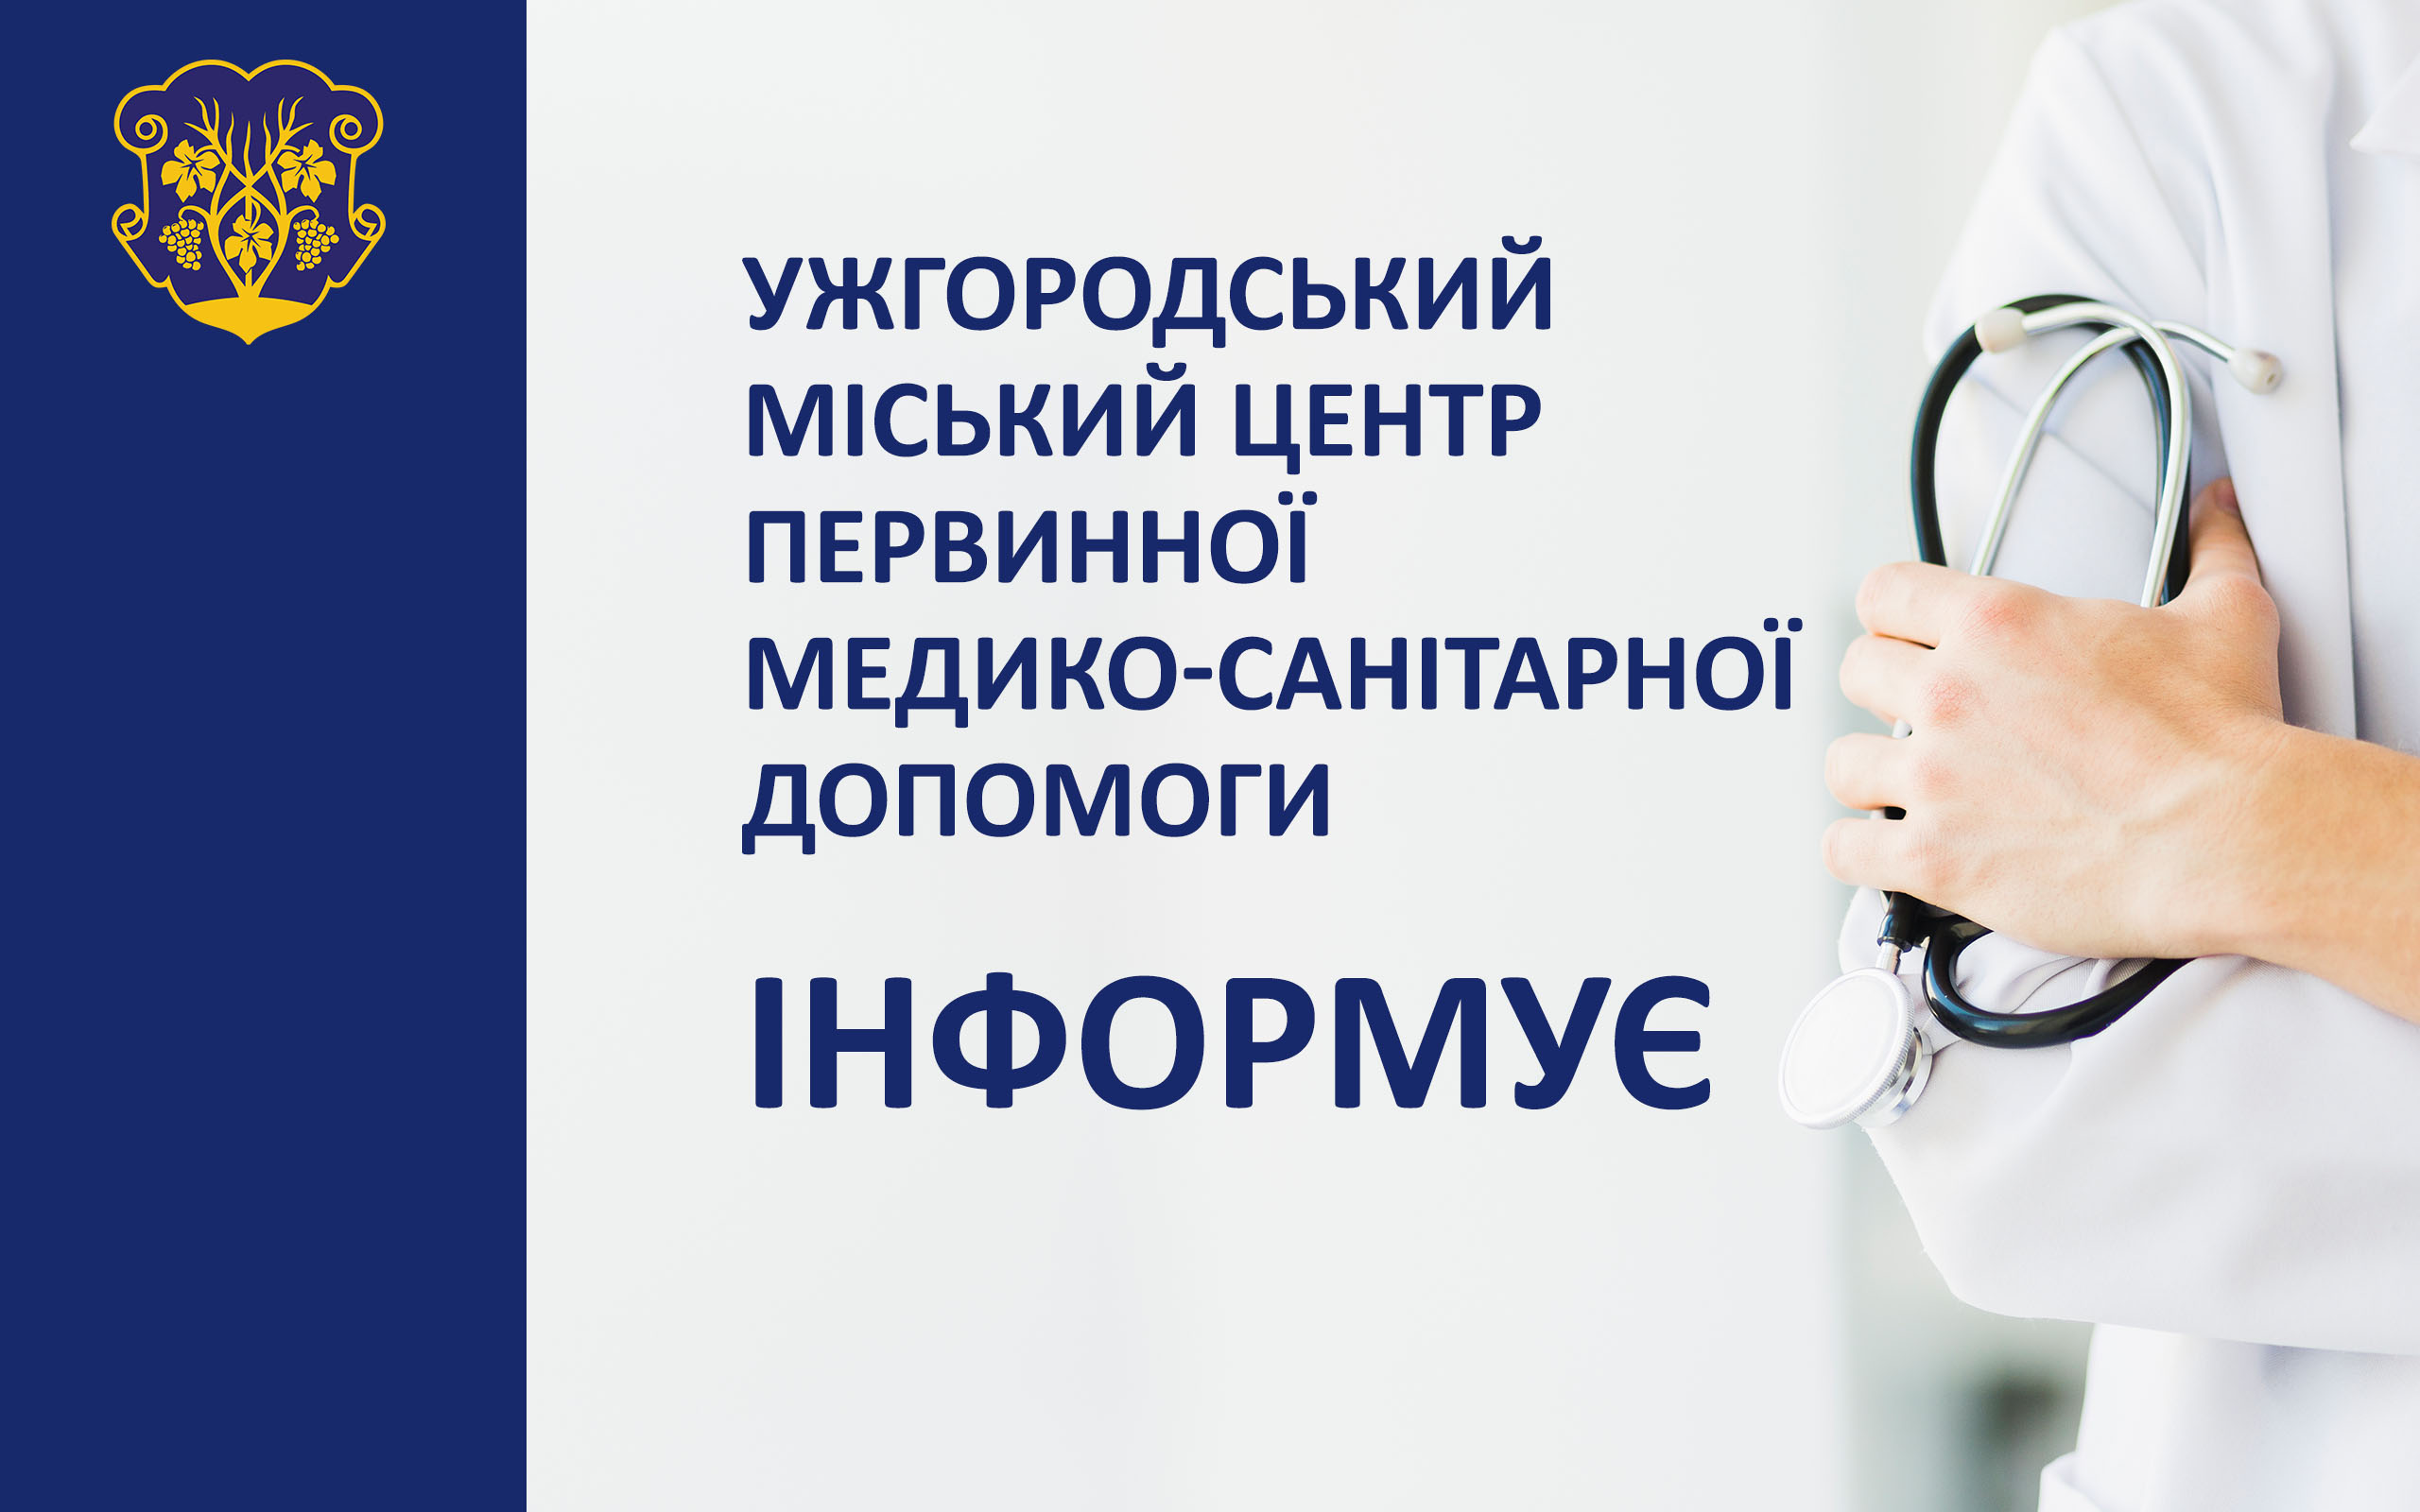 Сімейні амбулаторії в Ужгороді на період карантину переходять на роботу в телефонному режимі